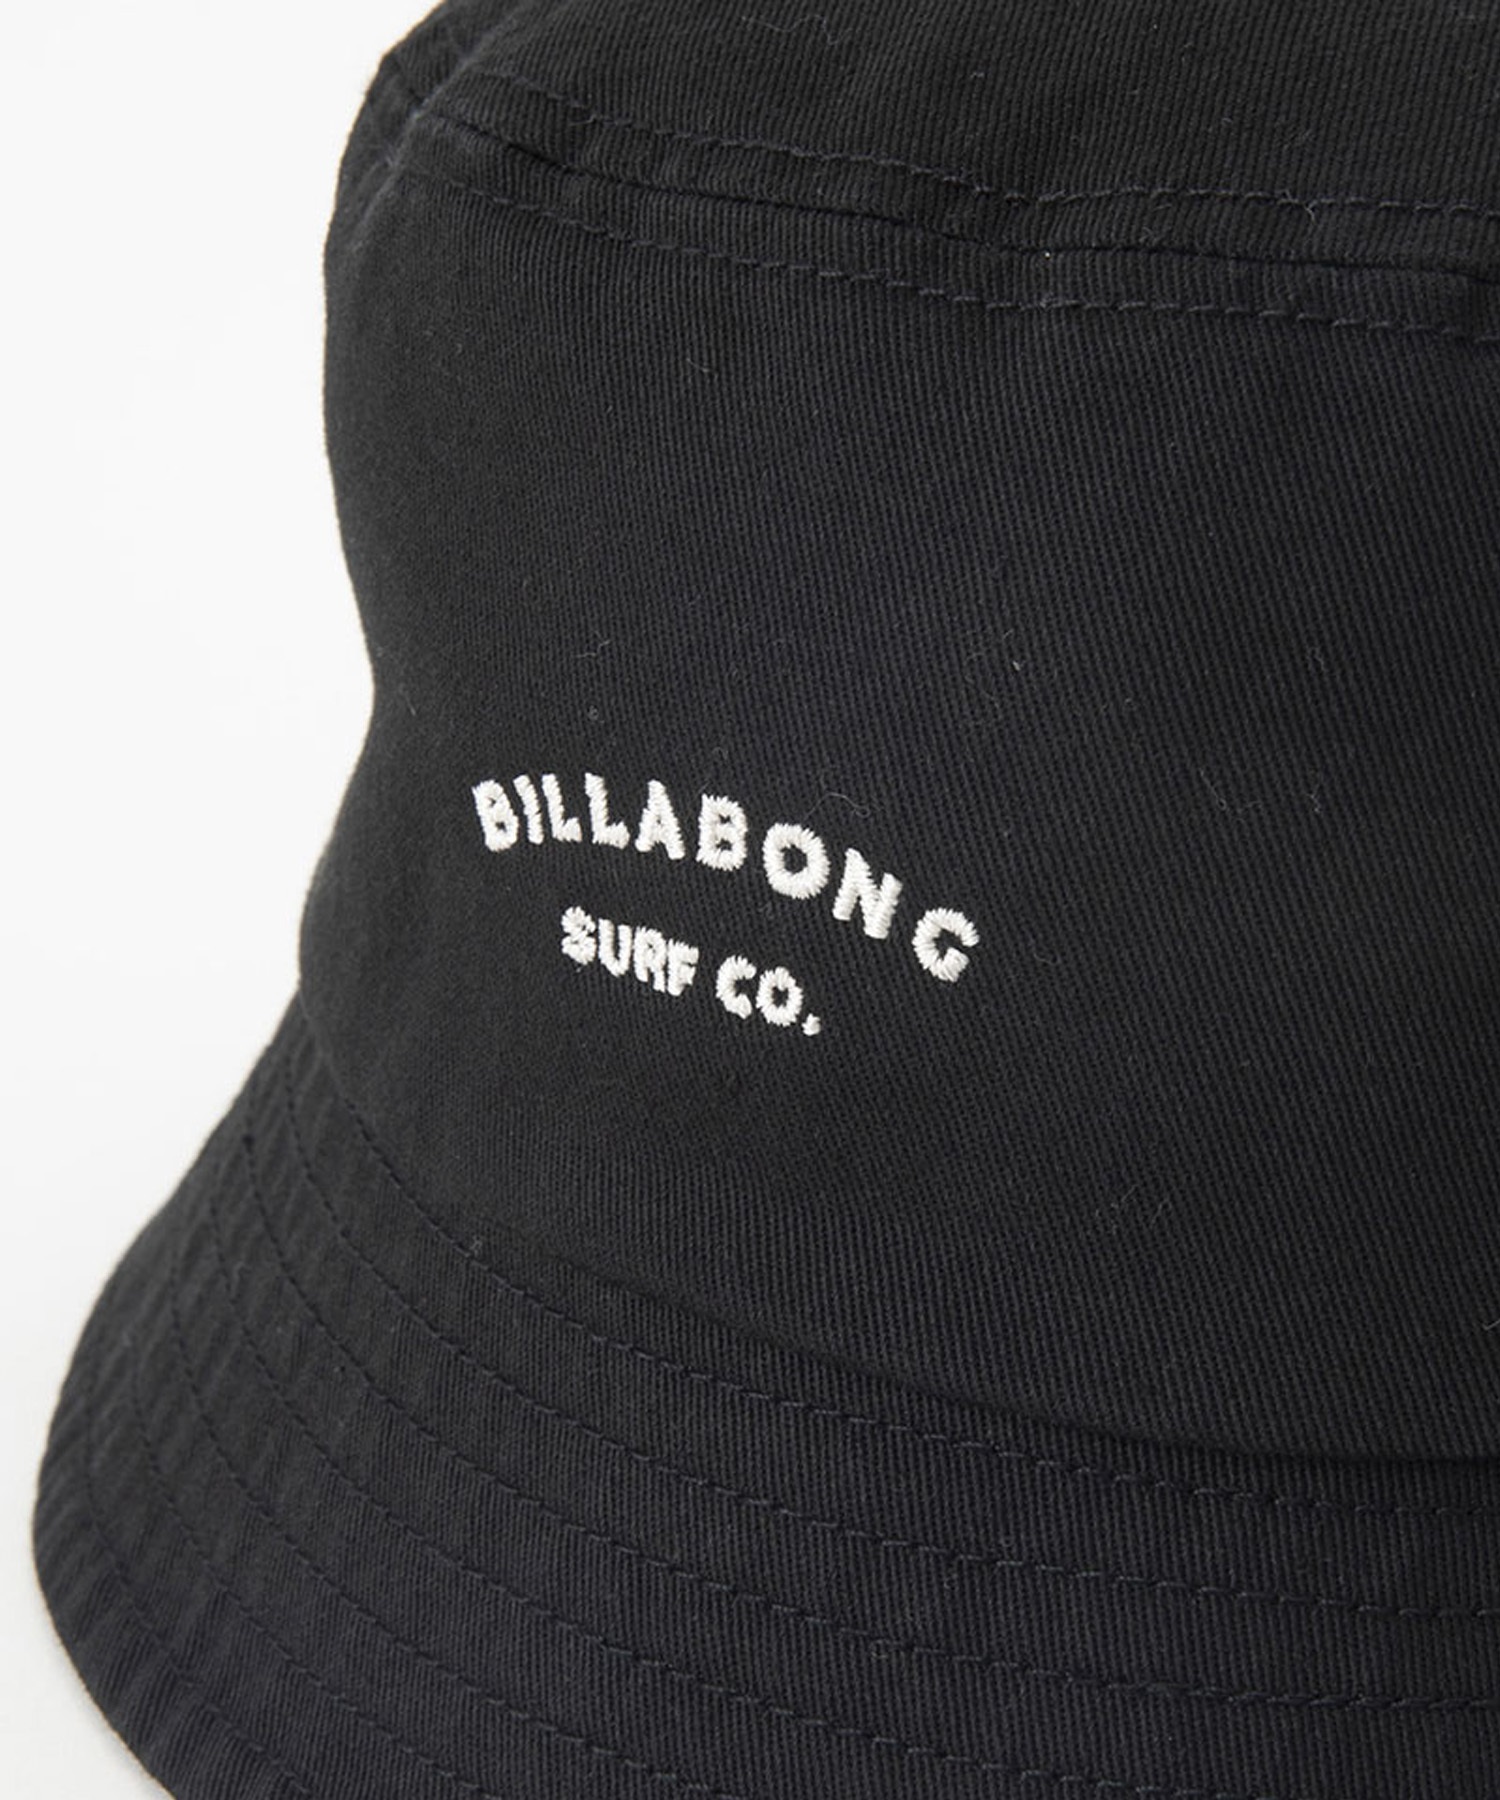 BILLABONG ビラボン BUCKET 2WAY HAT バケットハット バケハ 帽子 BE013-914(THL0-FREE)